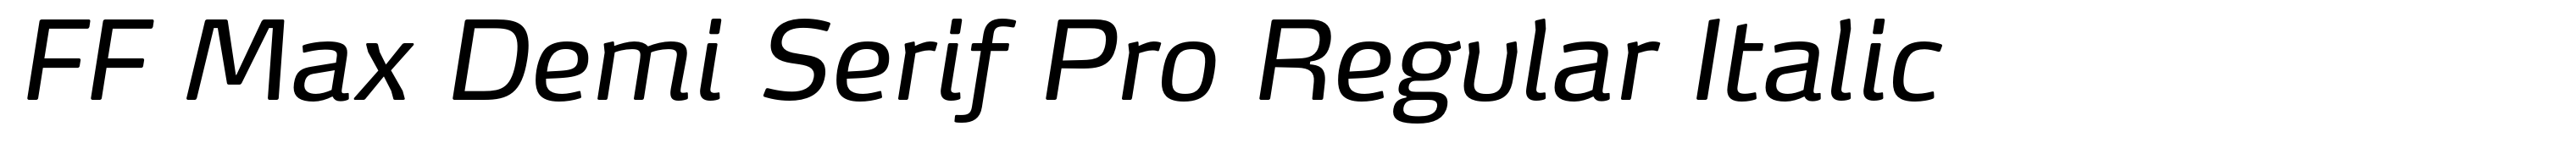 FF Max Demi Serif Pro Regular Italic